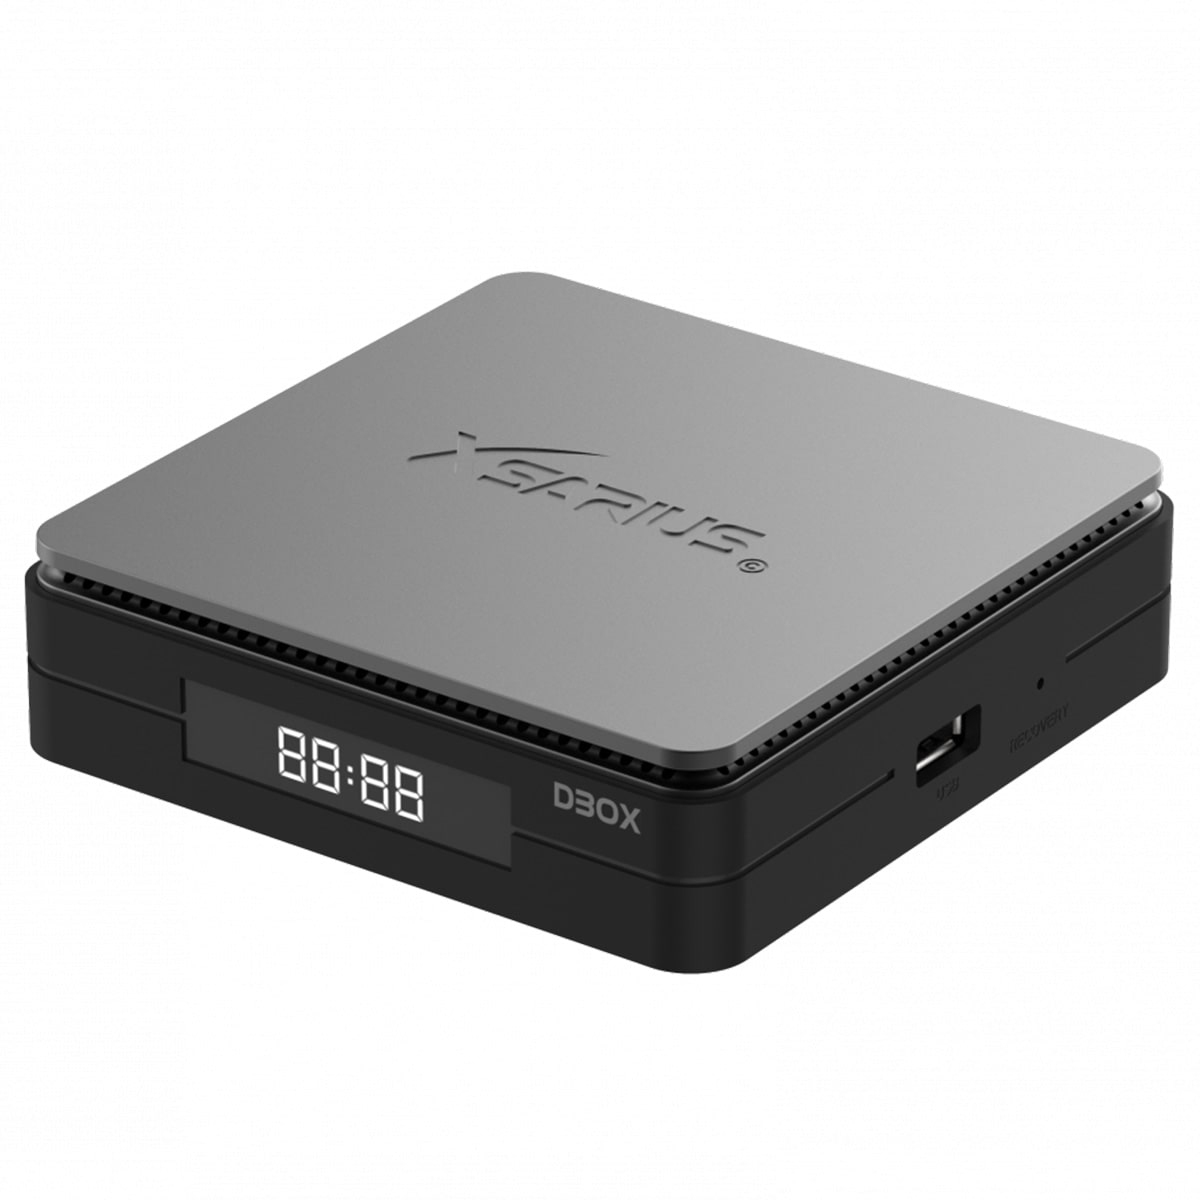 XSARIUS DBOX 16 GB